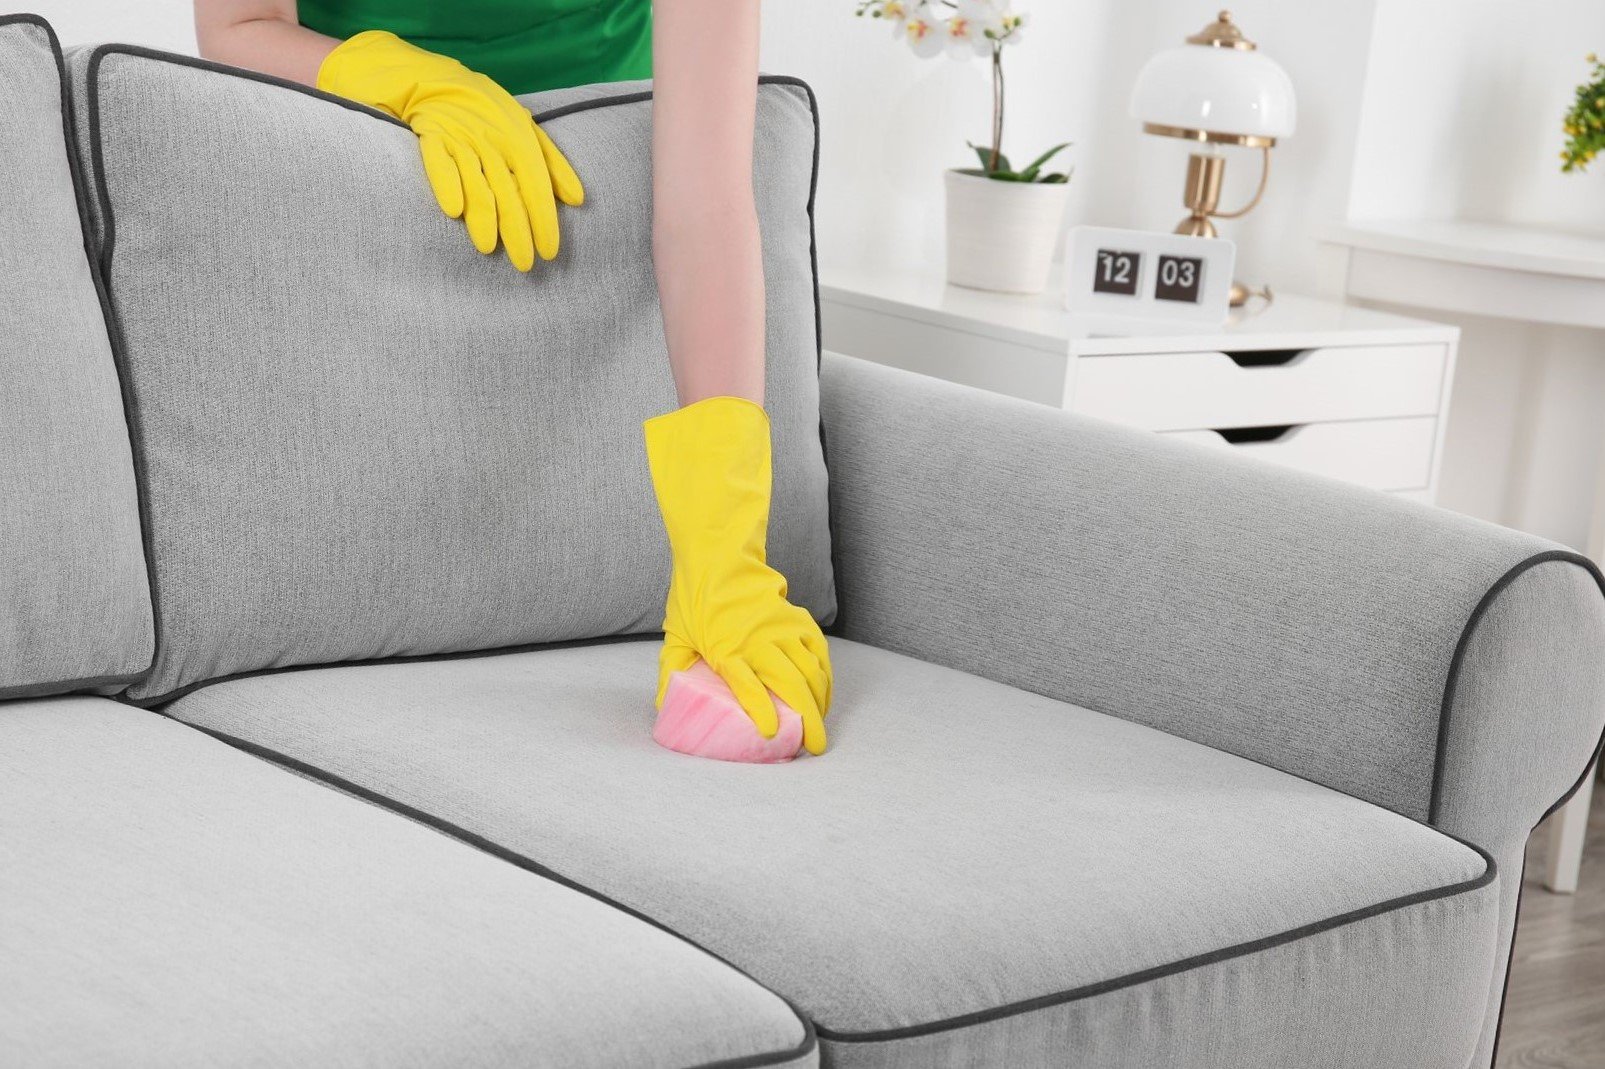 8c594ab25c61a9f96a65d33aef0e2469 Як почистити диван від плям без розлучень: як прибрати жирне пляма в домашніх умовах